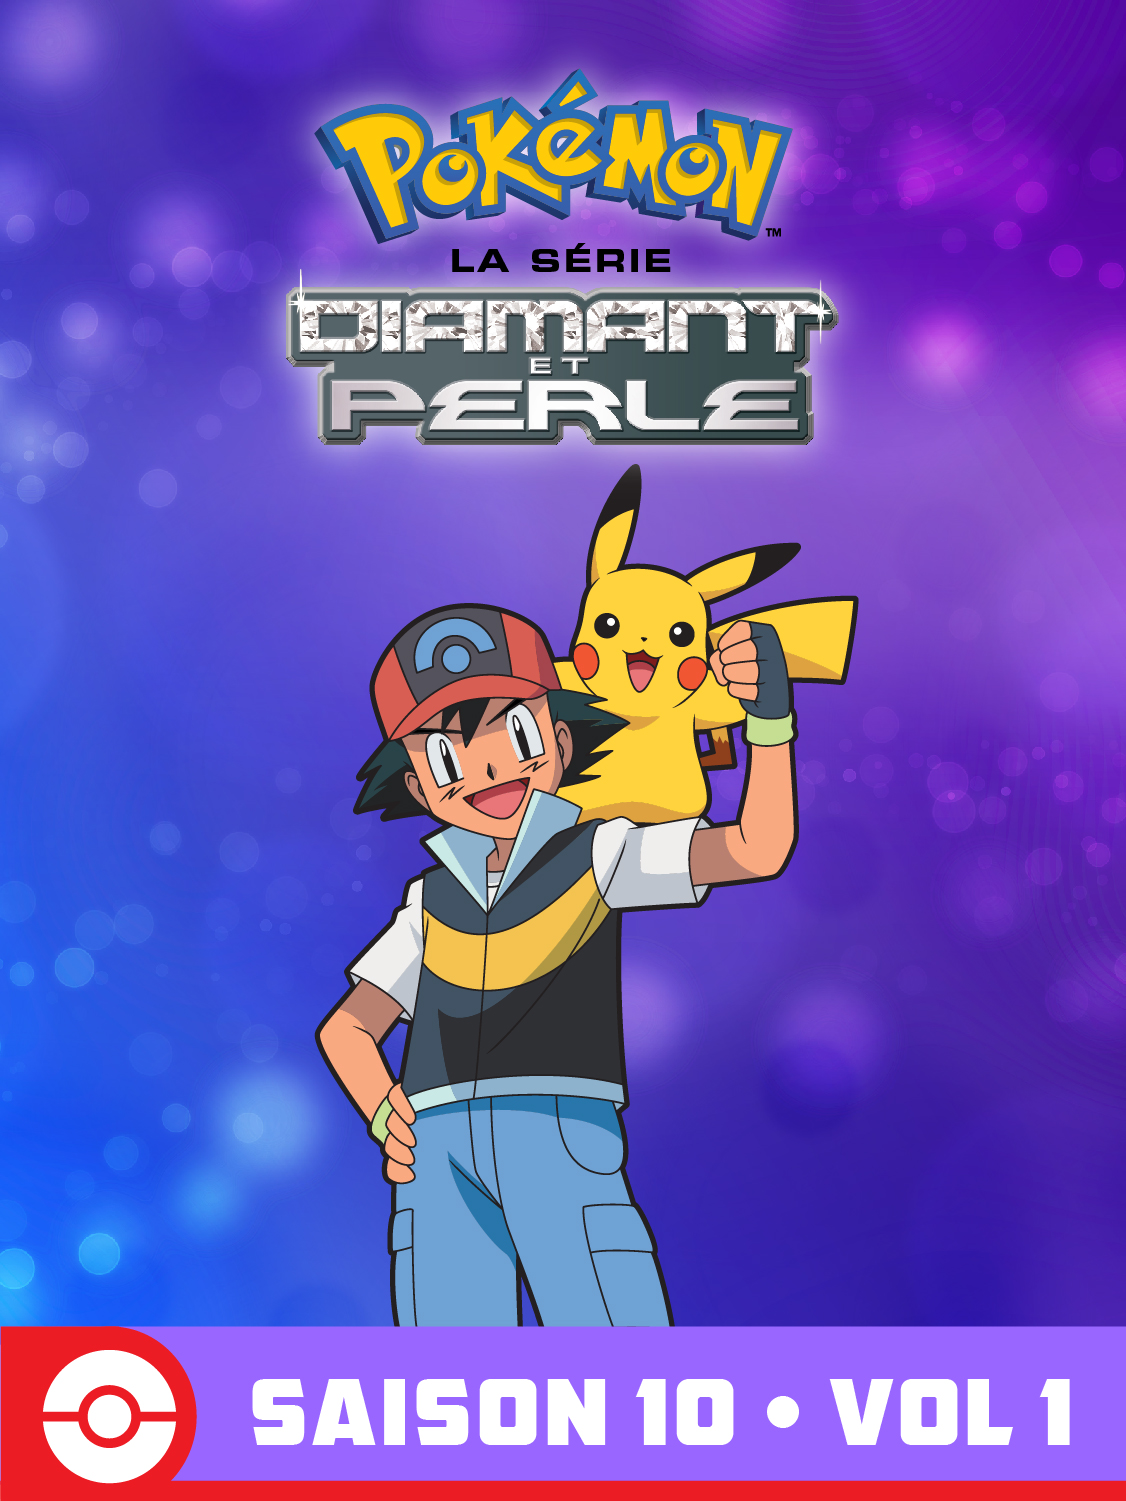  Diamant et Perle Volume 1 Saison 10 de Pokémon la Série - 2010 